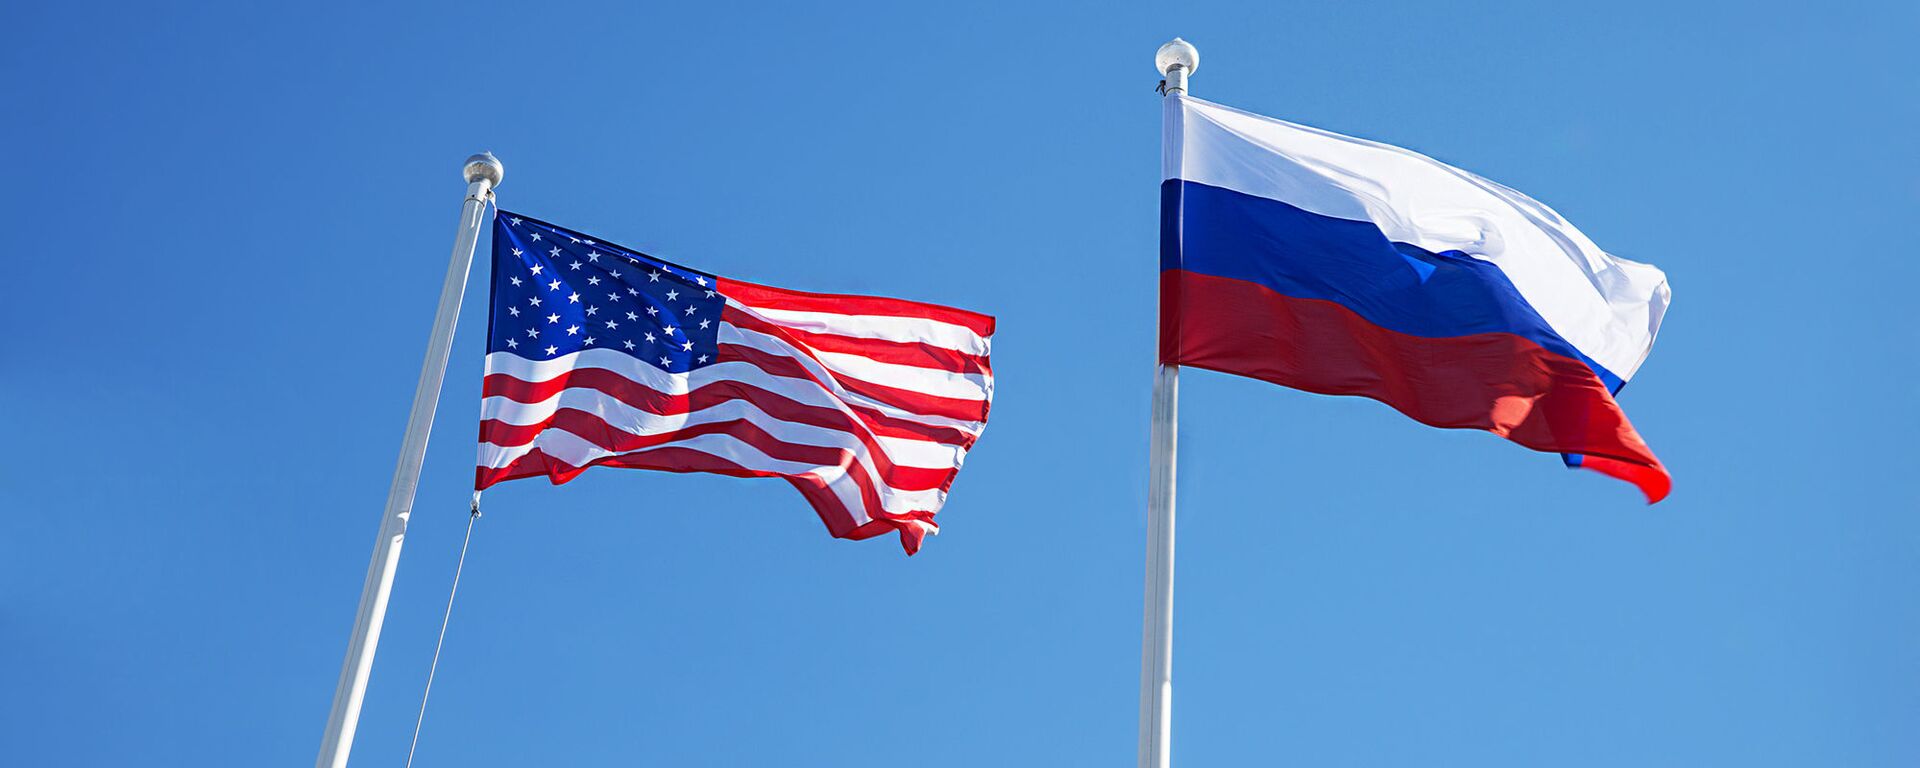 JAV ir Rusijos vėliavos - Sputnik Lietuva, 1920, 12.06.2021